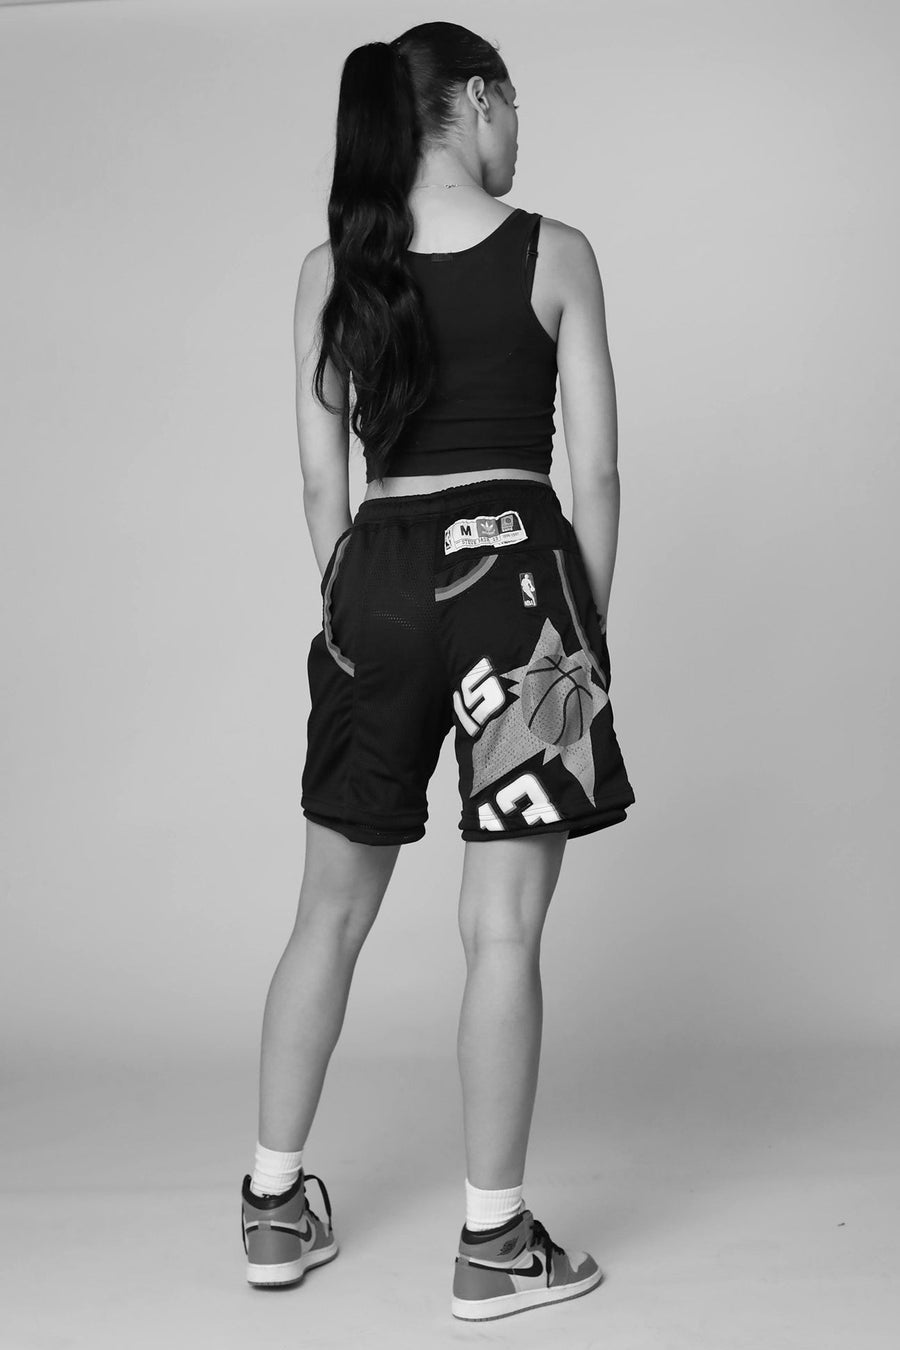 Unisex Rework New York Knicks NBA Jersey Shorts - XXL